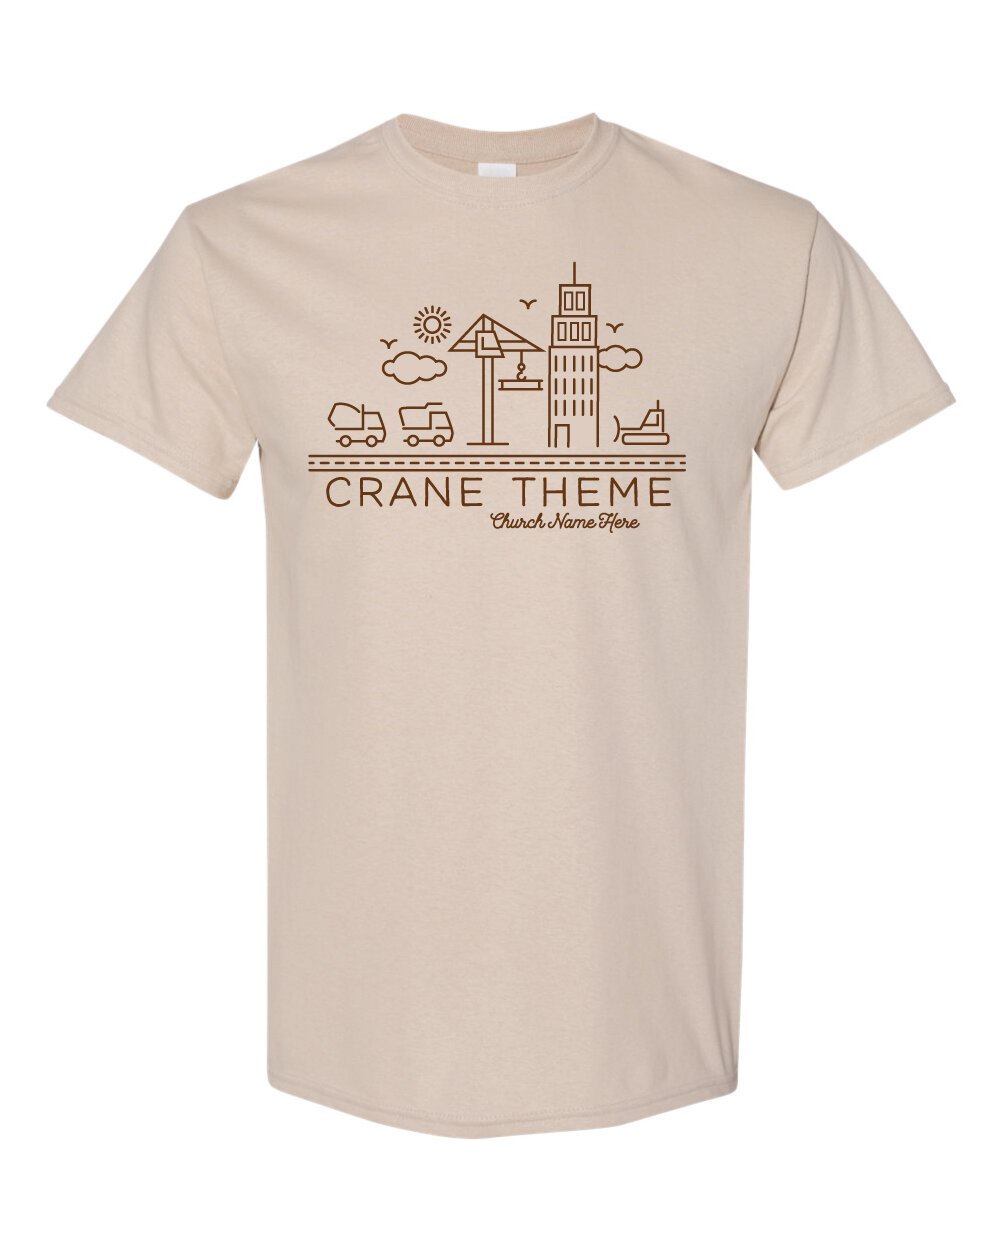 Crane 3-01.jpg